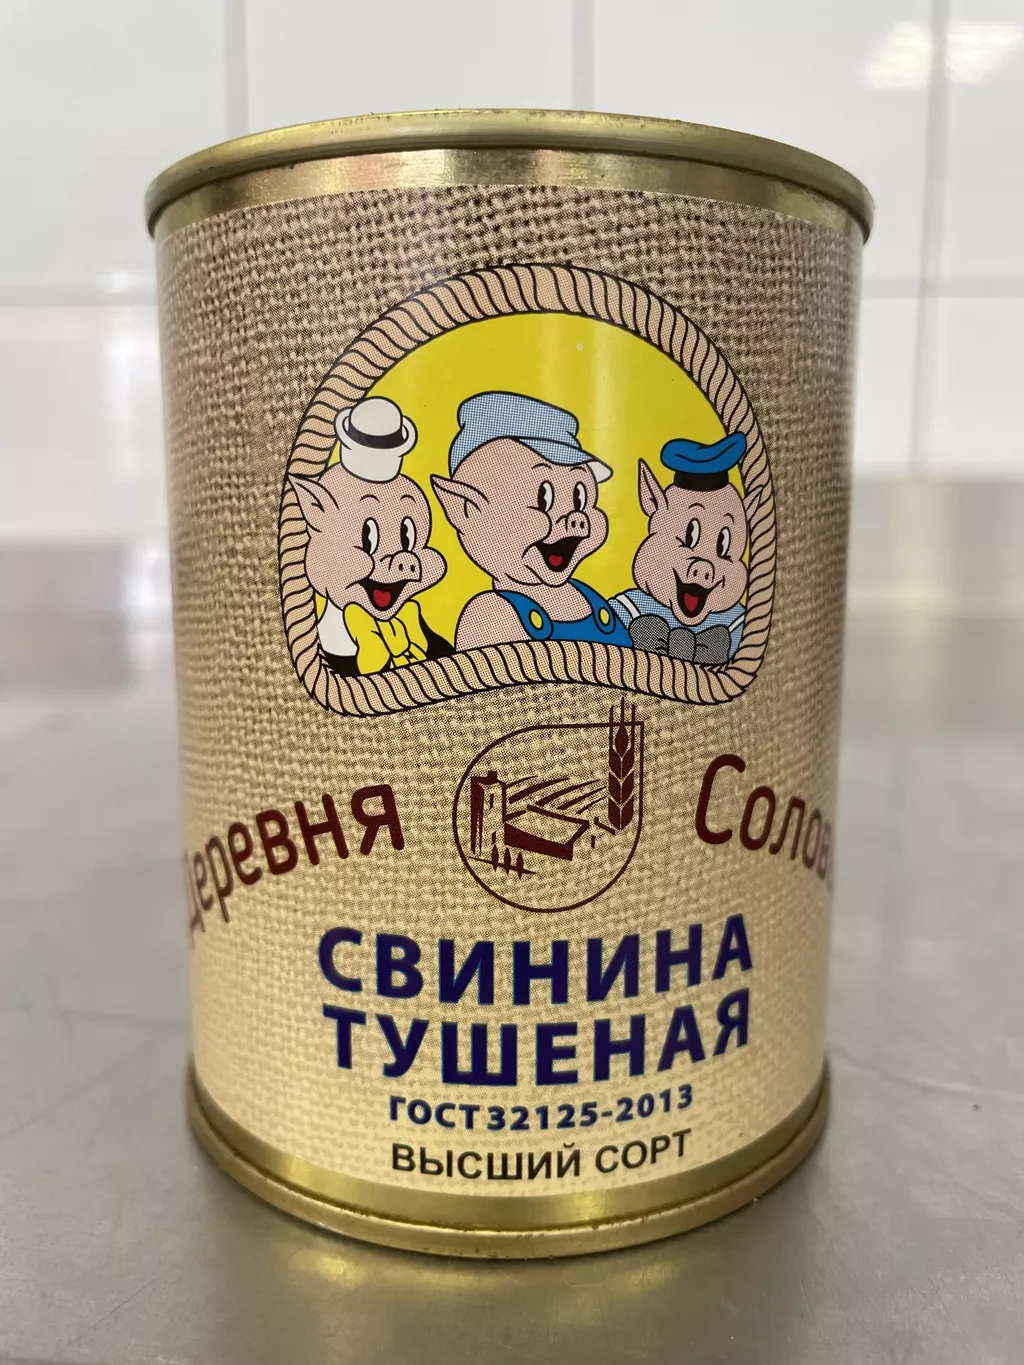 свинина тушен. гост высший сорт ж/б 338г в Пскове и Псковской области